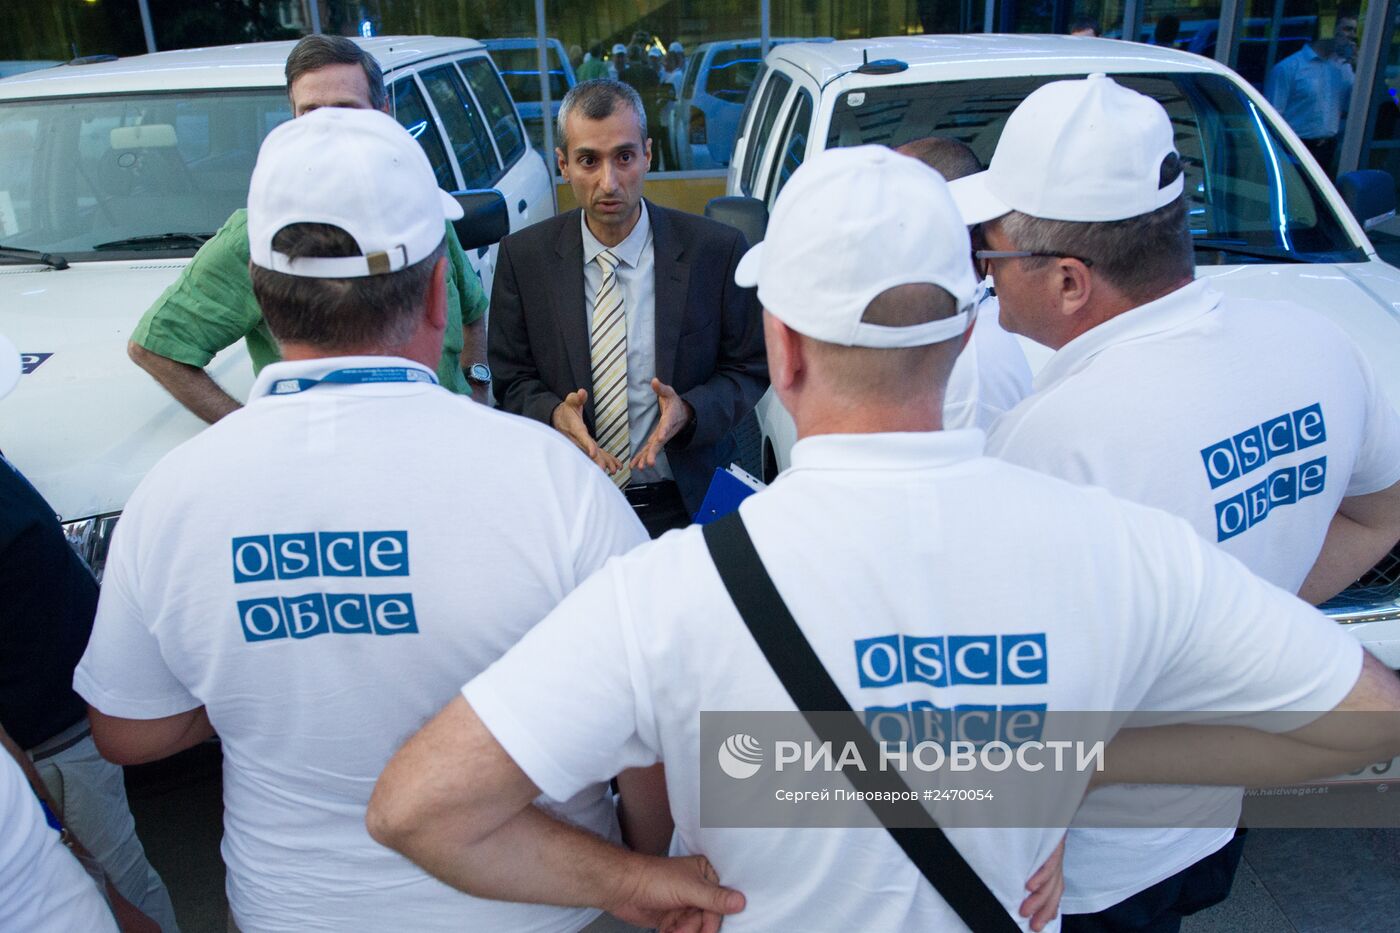 Сотрудники миссии ОБСЕ прибыли в Ростов-на-Дону